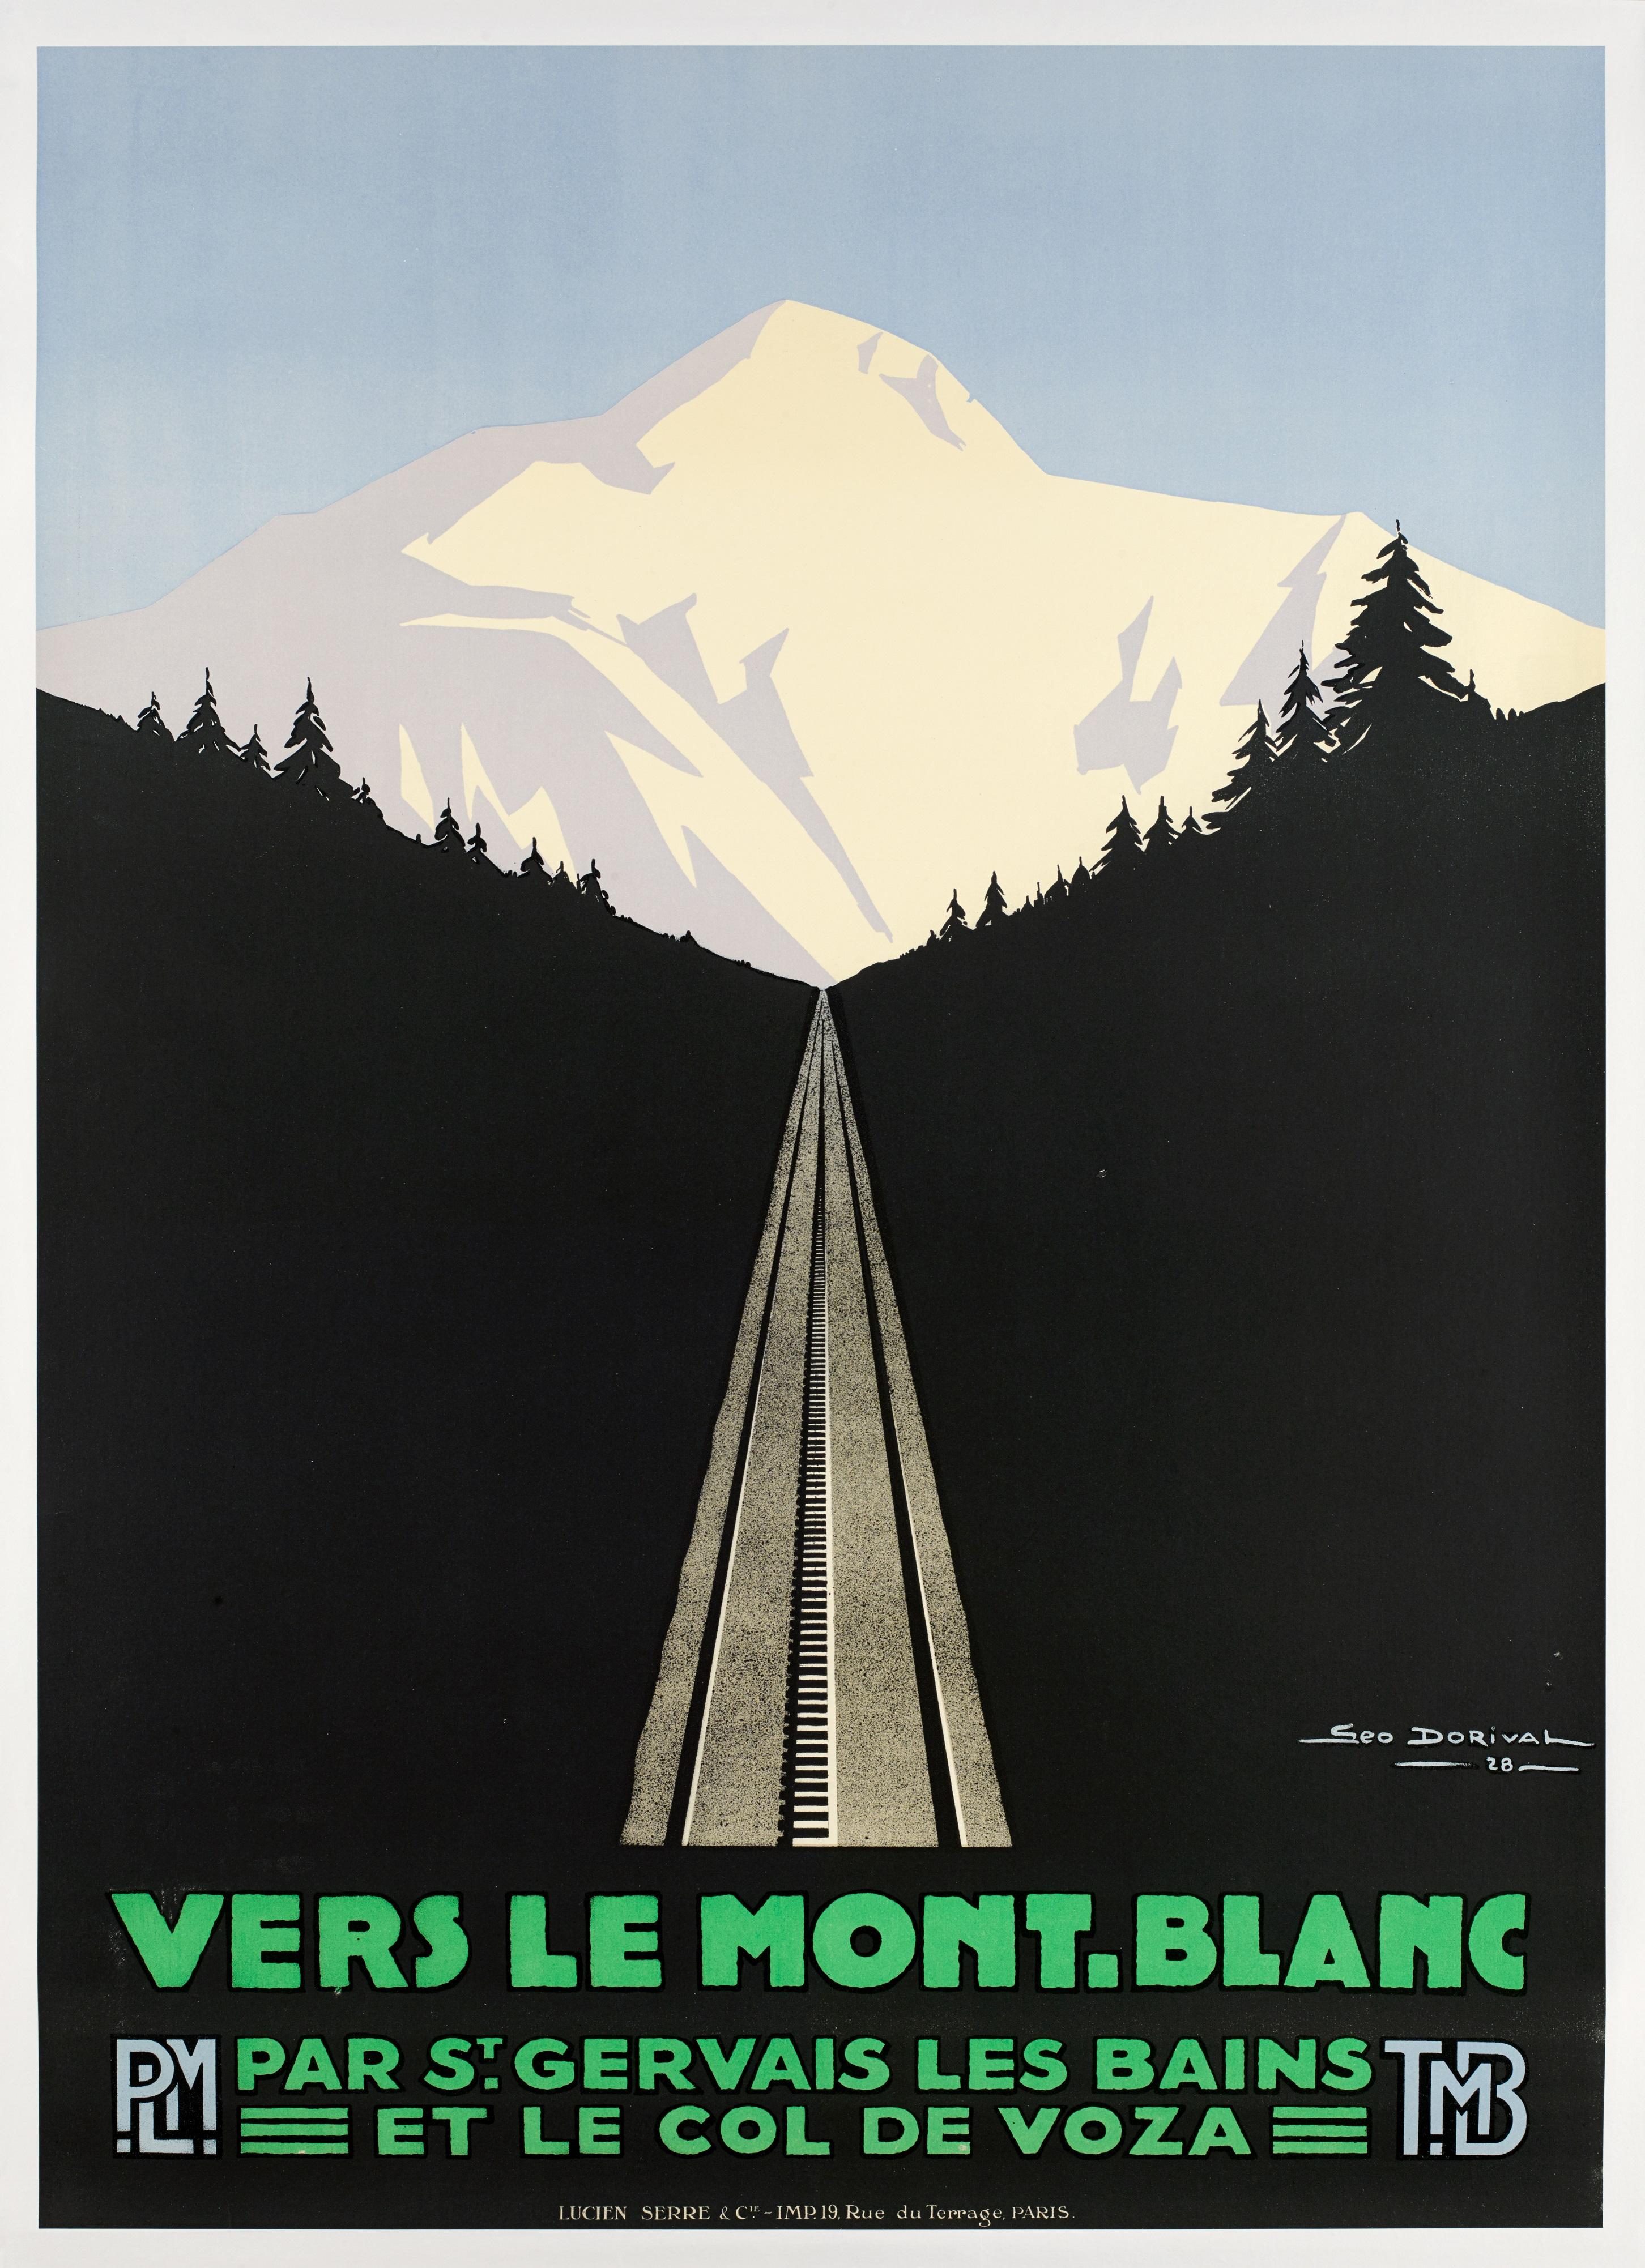 Original French Vintage Travel PLM Poster by Geo Dorival for Le Mont Blanc in 1928.

Artiste : Géo Dorival
Titre : Triptyque Vers le Mont-Blanc par St Gervais les bains et le col de Voza
Date : 1928
Dimensions : 75 x 104.5 cm
Imprimeur :